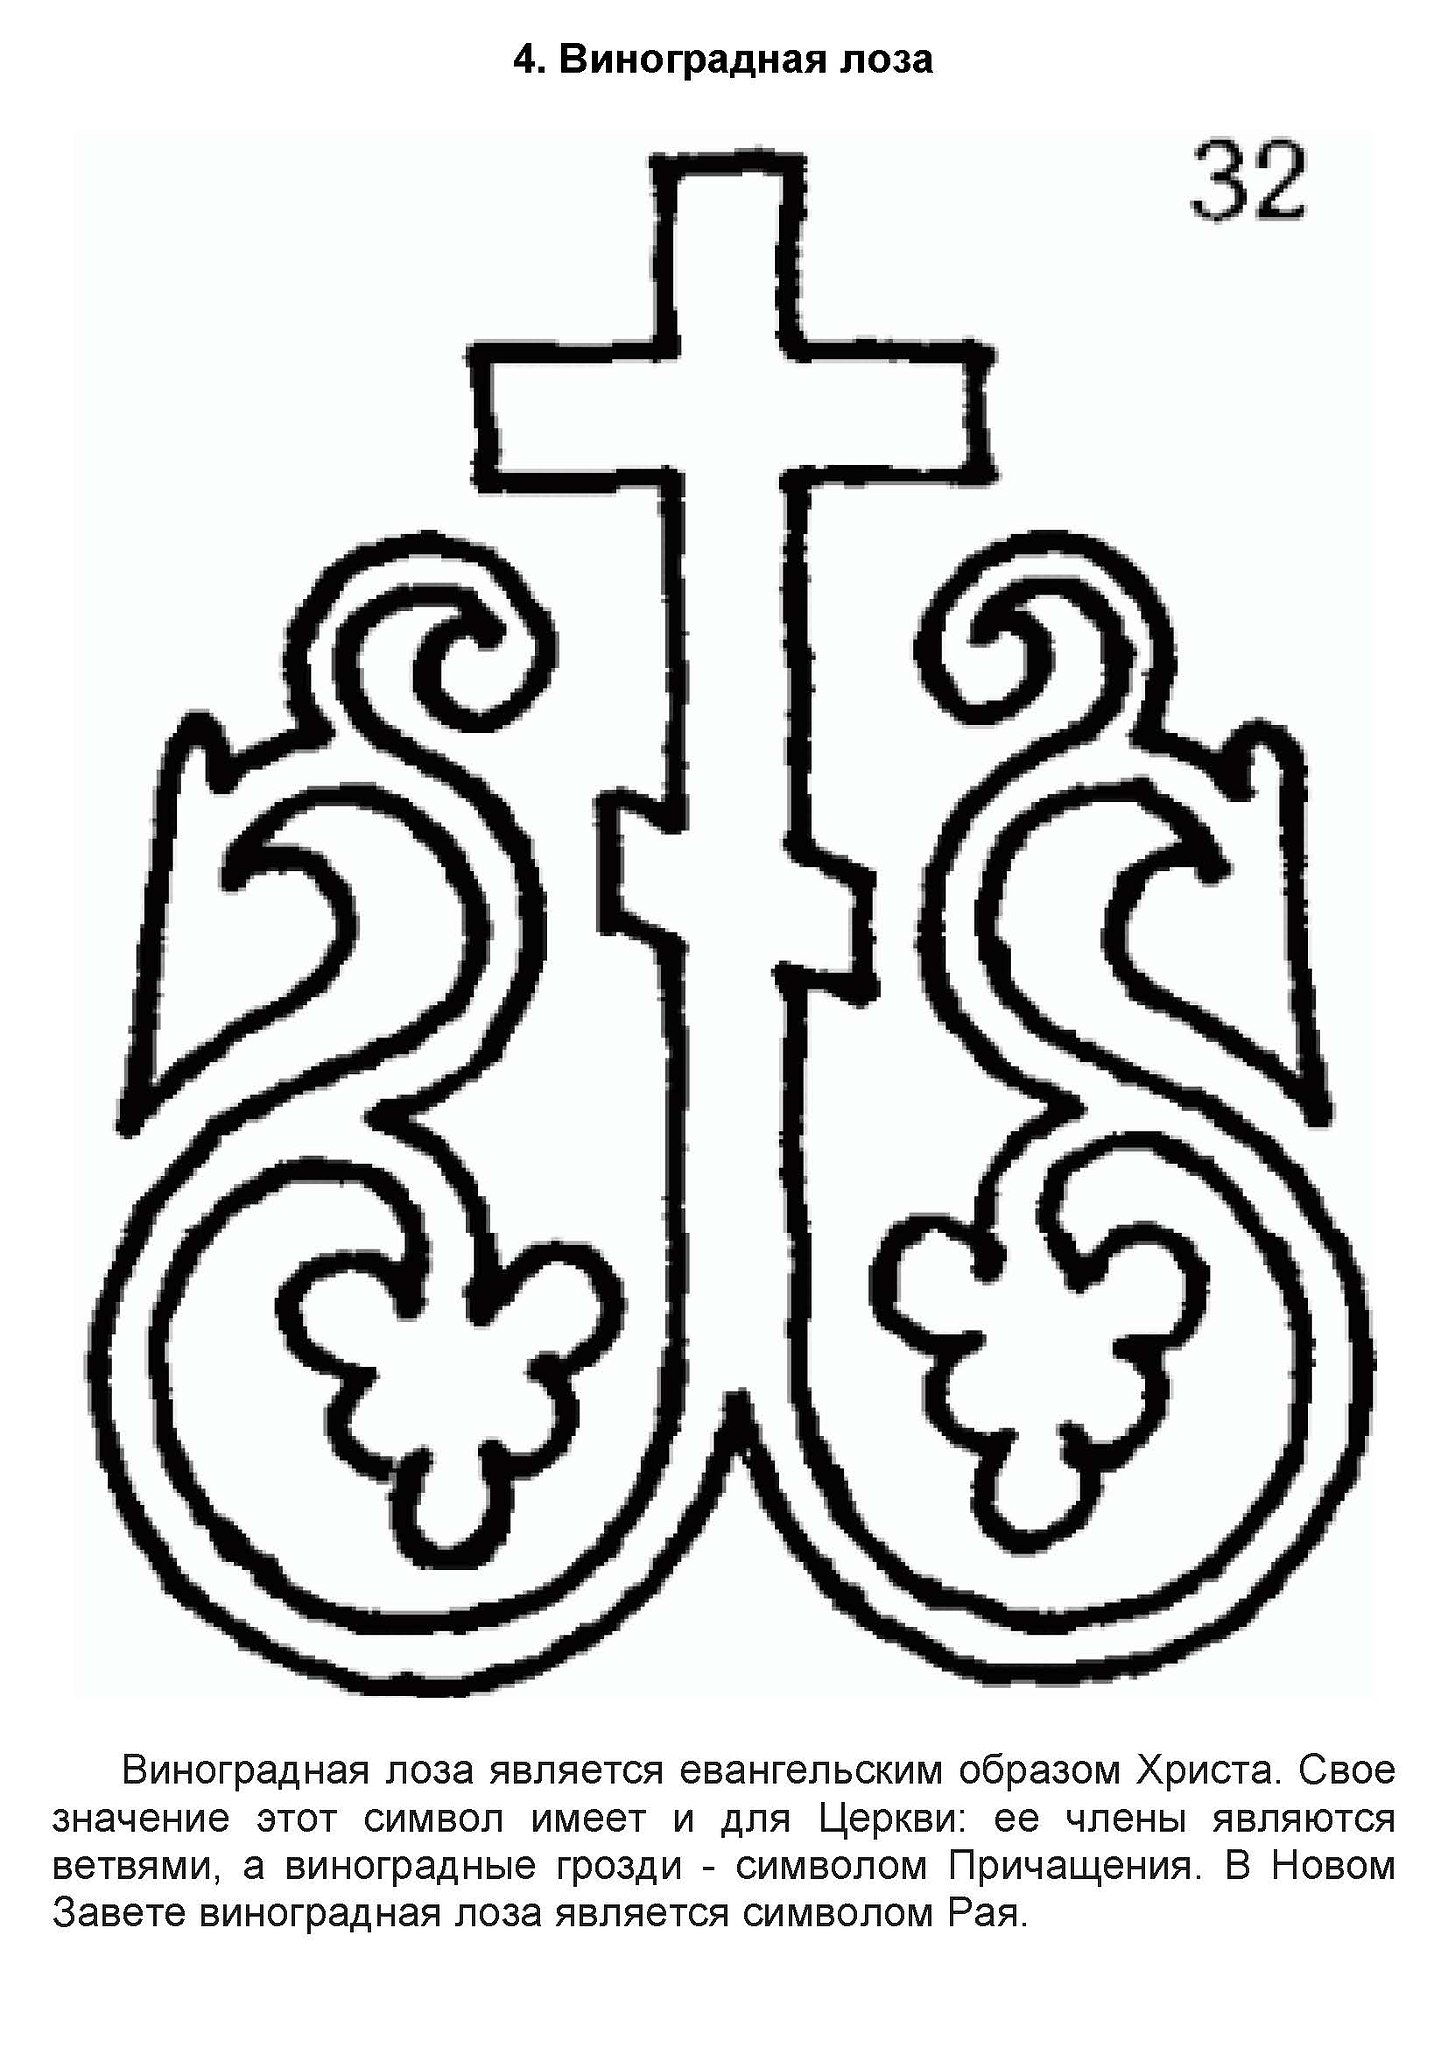 Символ христианства крест Виноградная лоза